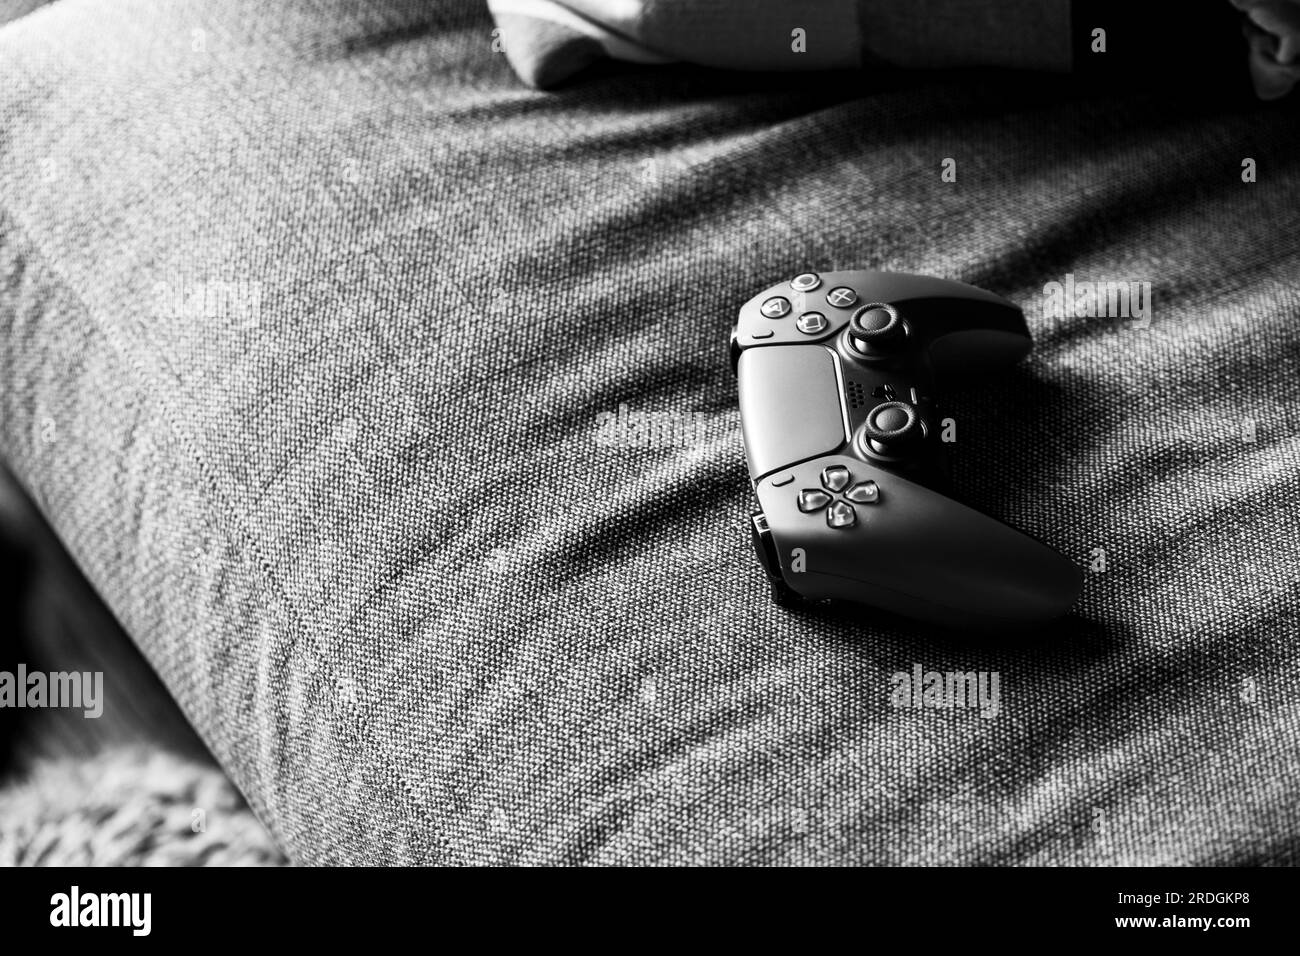 Brecht, Belgien - 14. juli 2023: Schwarz-weißes Porträt eines traditionellen offiziellen playstation 5 -Game-Controllers, der auf einer Couch liegt und gespielt werden kann Stockfoto